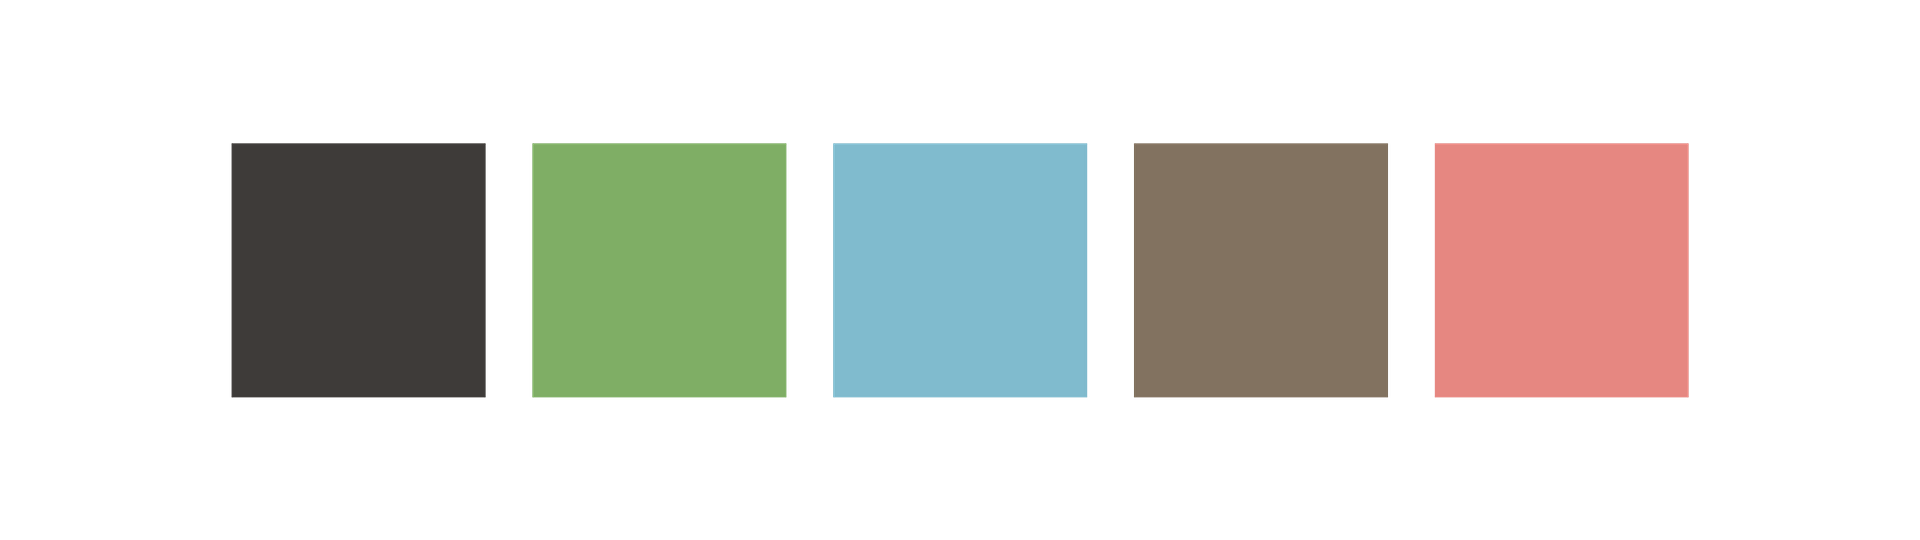 Color Palette: black, green, light blue, brown, pink